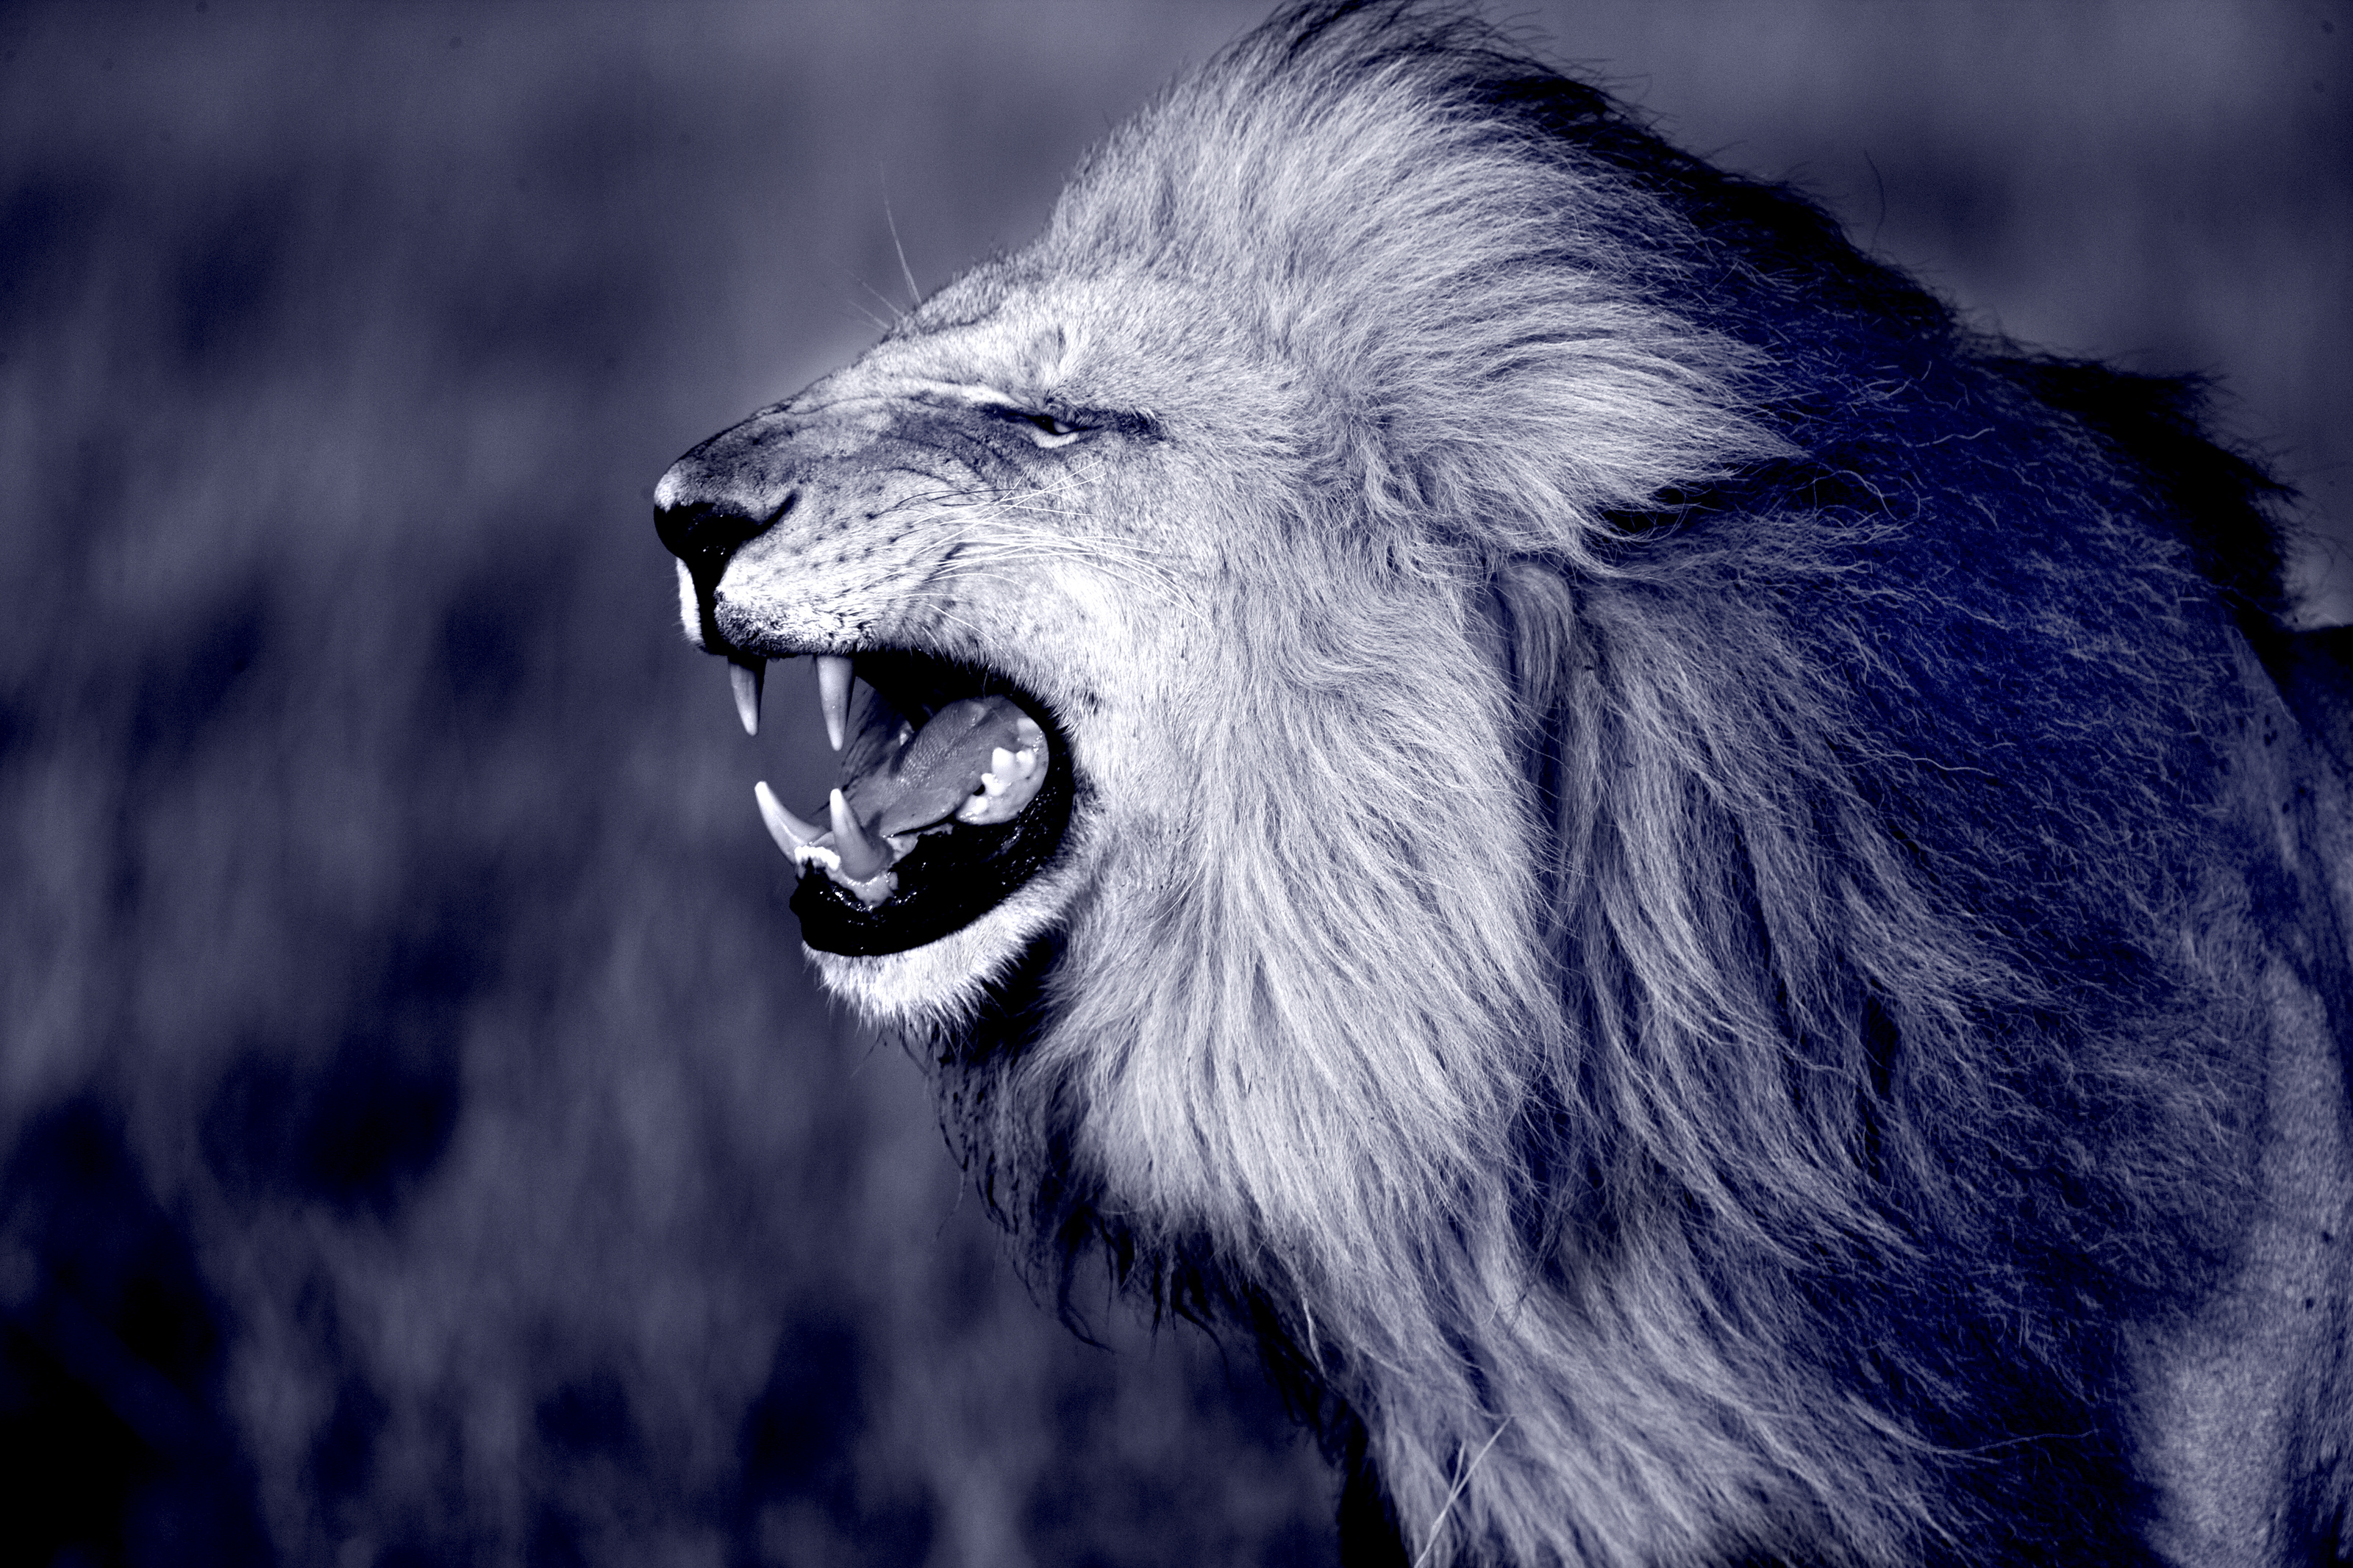 Male Lion's Roar (Blue Tone) Mural Jim Zuckerman - Murals Your Way